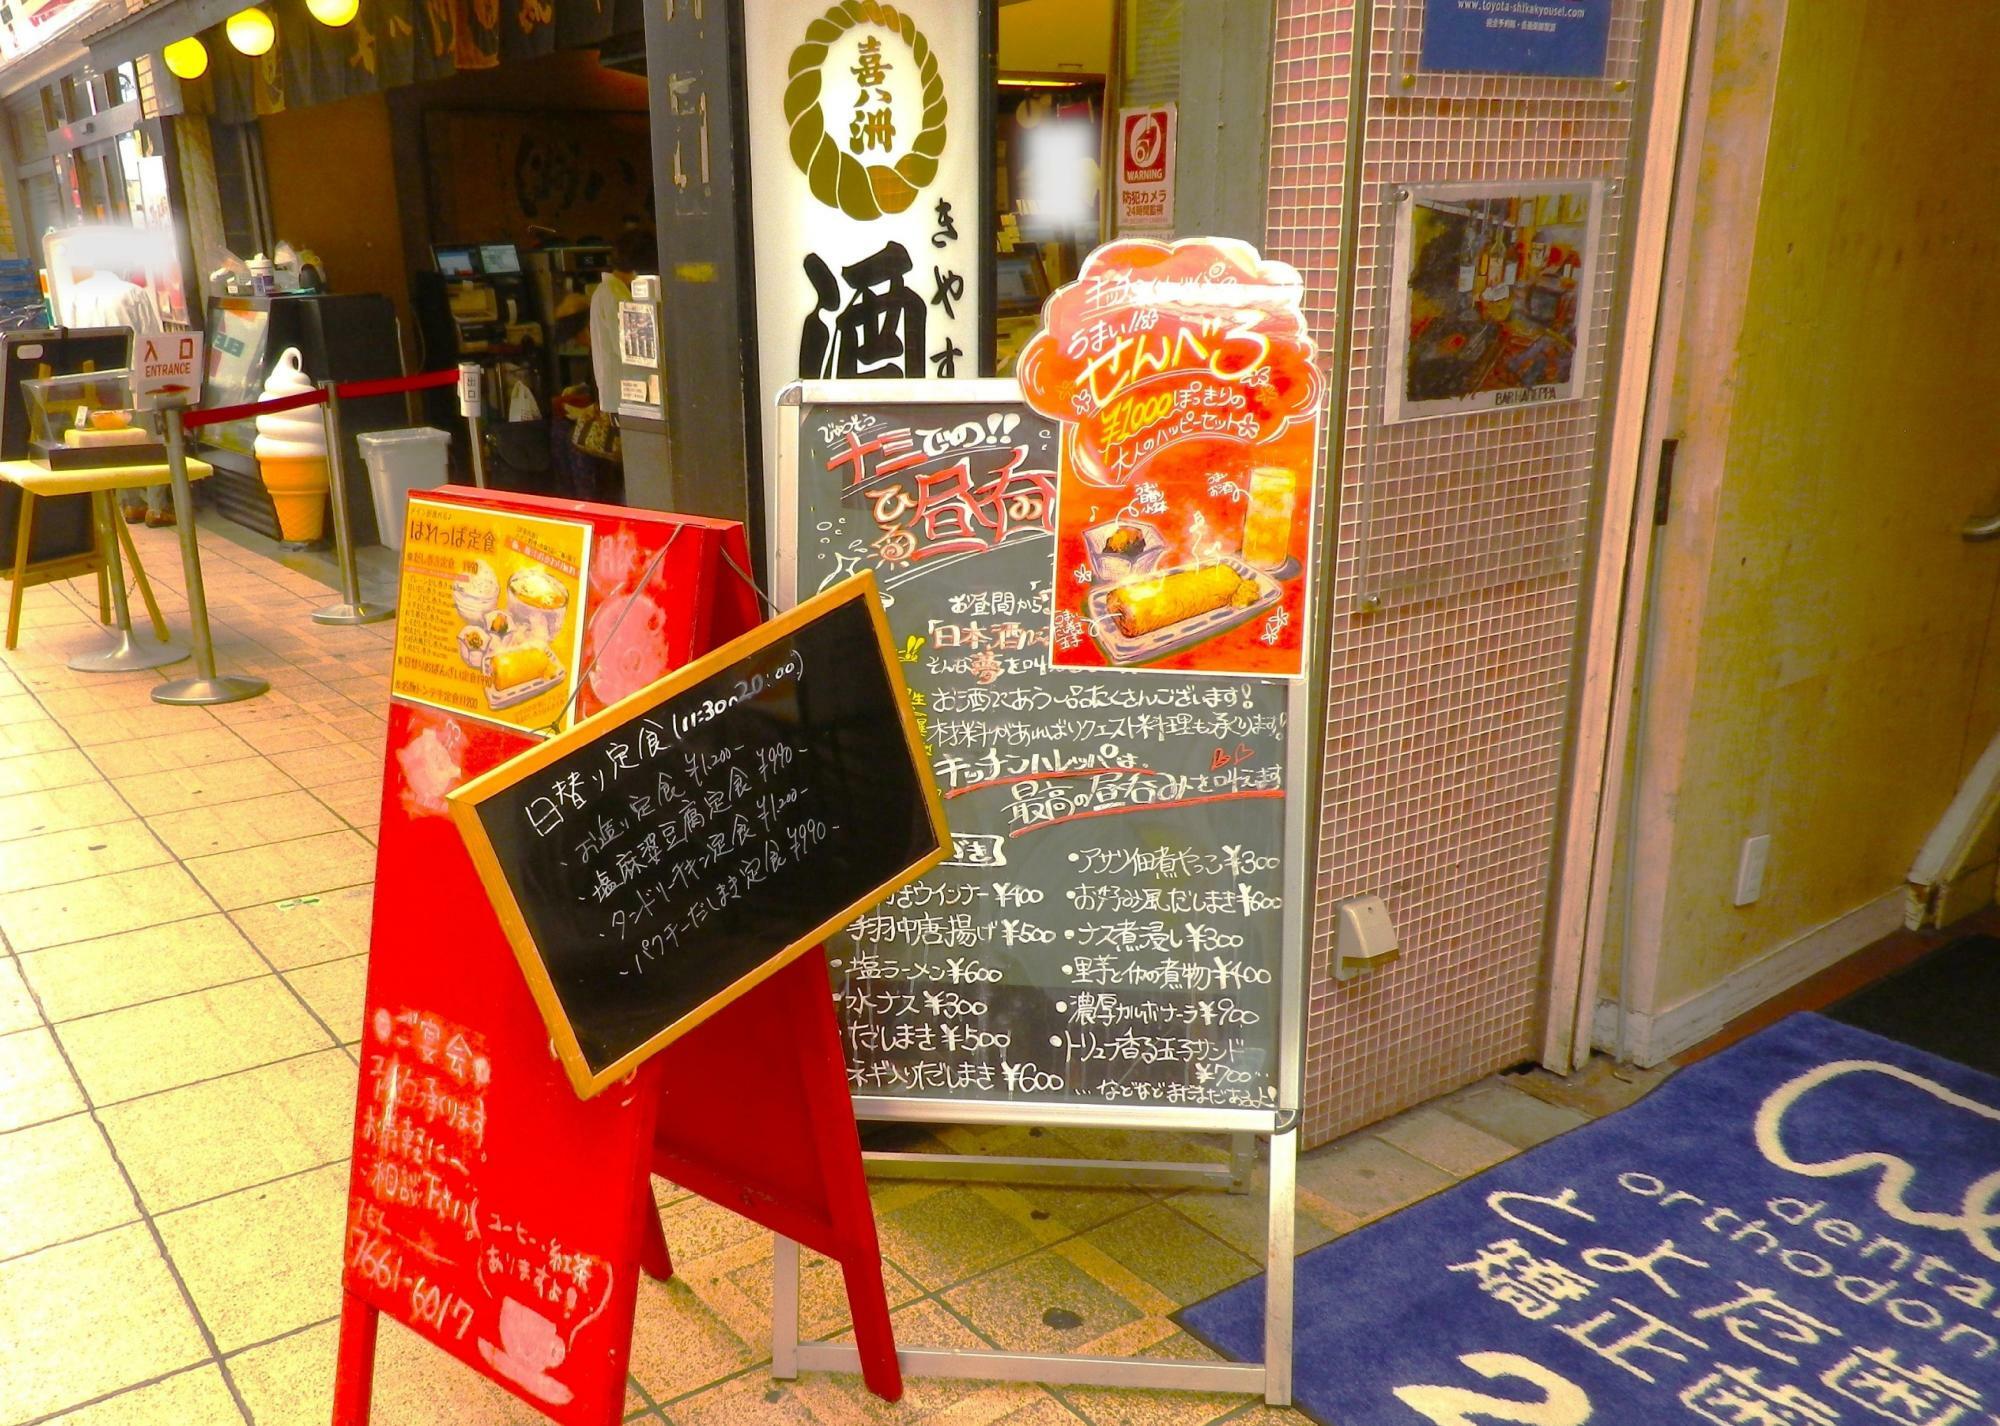 この看板に気付かれる和菓子の「喜八洲総本店」に来られた方も少なくないのでは。